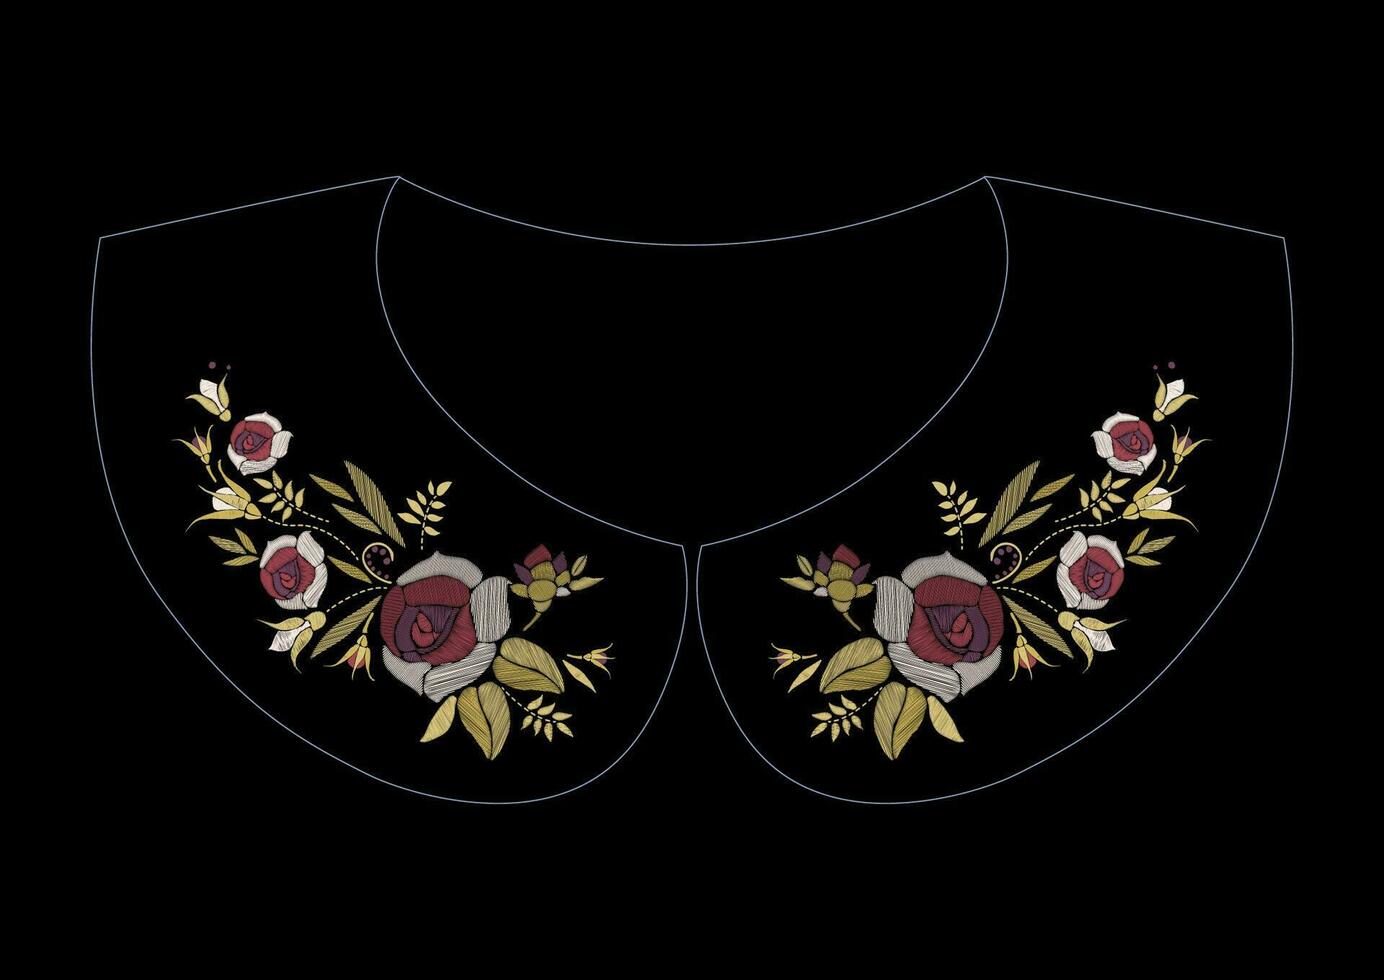 Satin- Stich Stickerei Design mit Rosen. Volk Linie Blumen- modisch Muster zum Kleid Kragen. ethnisch Mode Ornament zum Hals auf schwarz Hintergrund. vektor